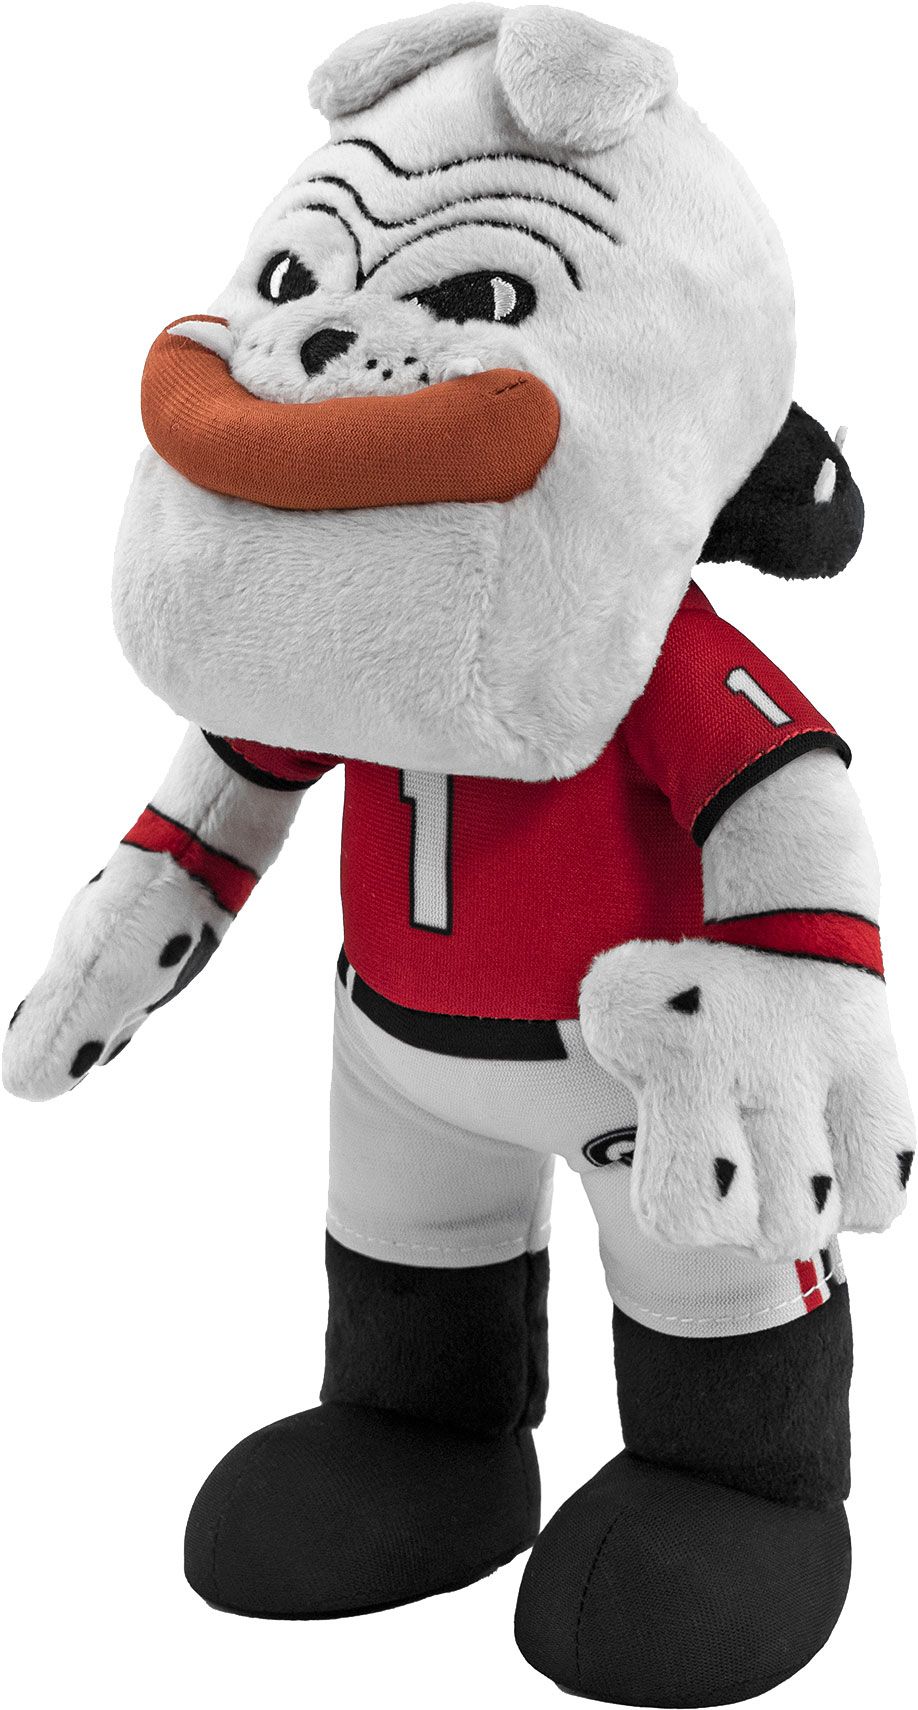 Uncanny Brands Georgia Bulldogs 10" Mascot Plush